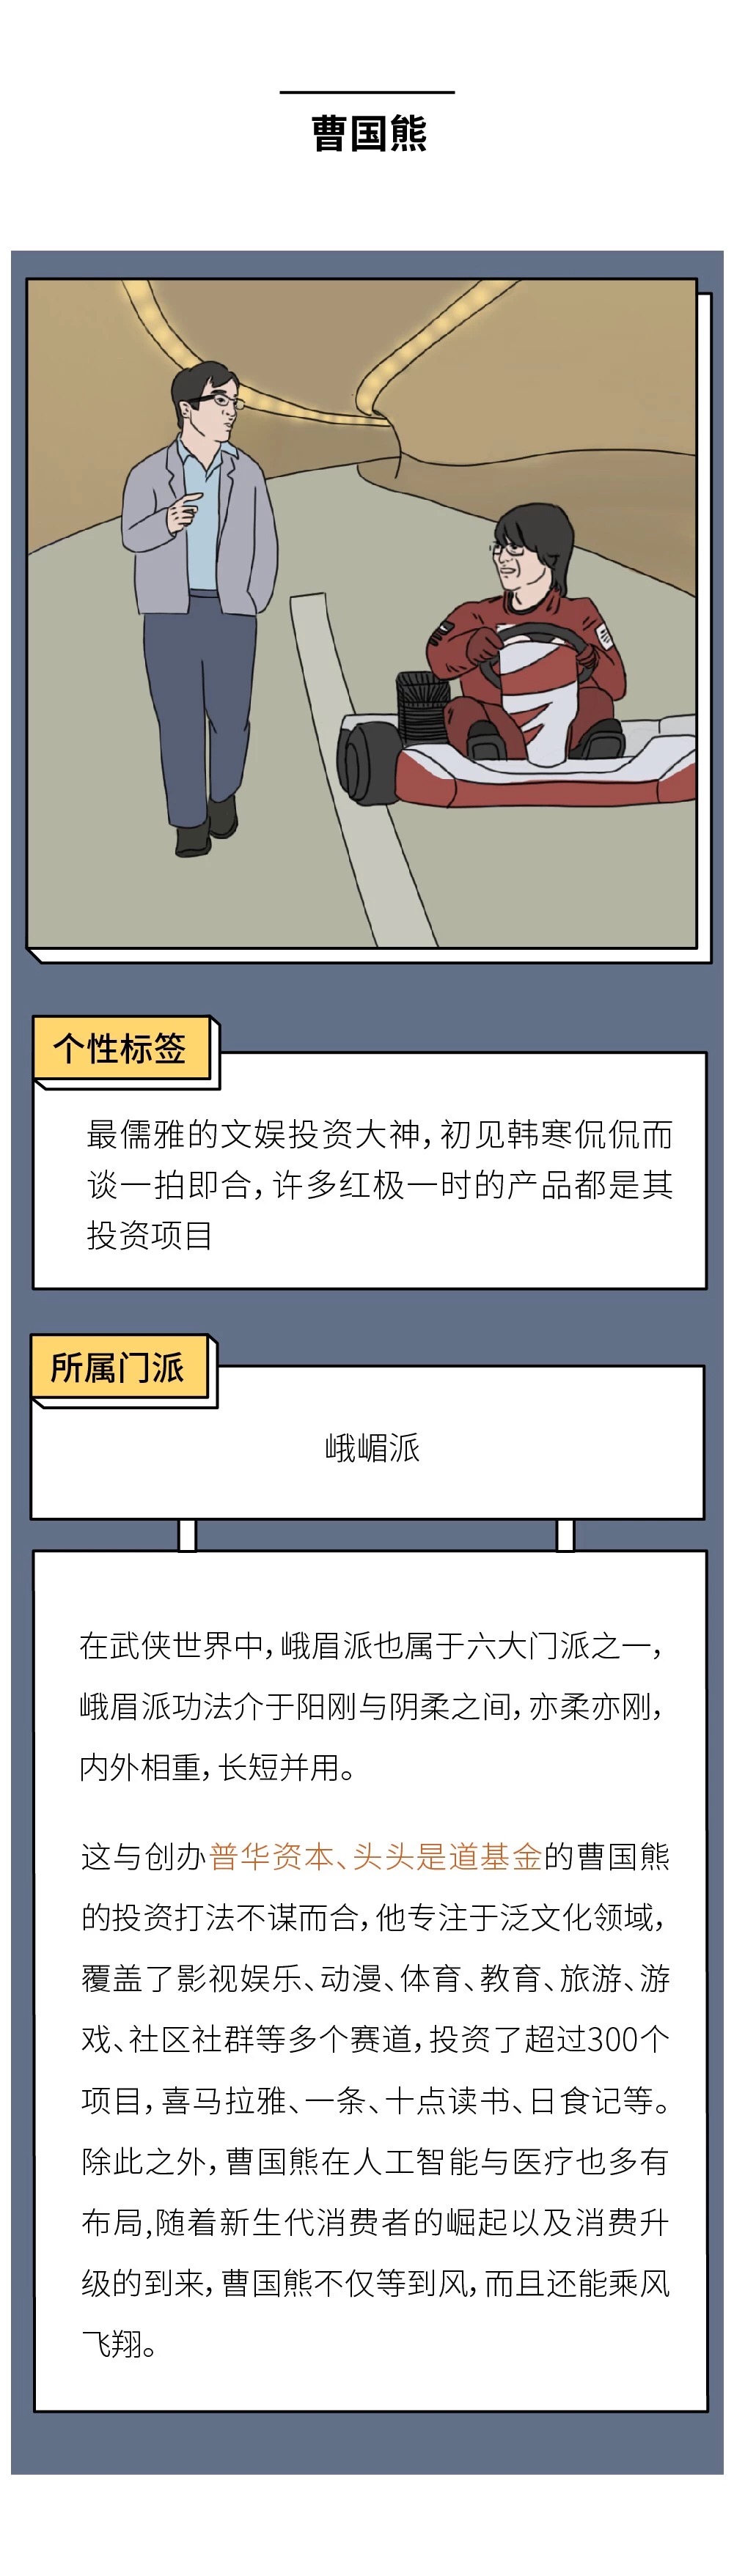 中国造风VC图鉴8.jpg